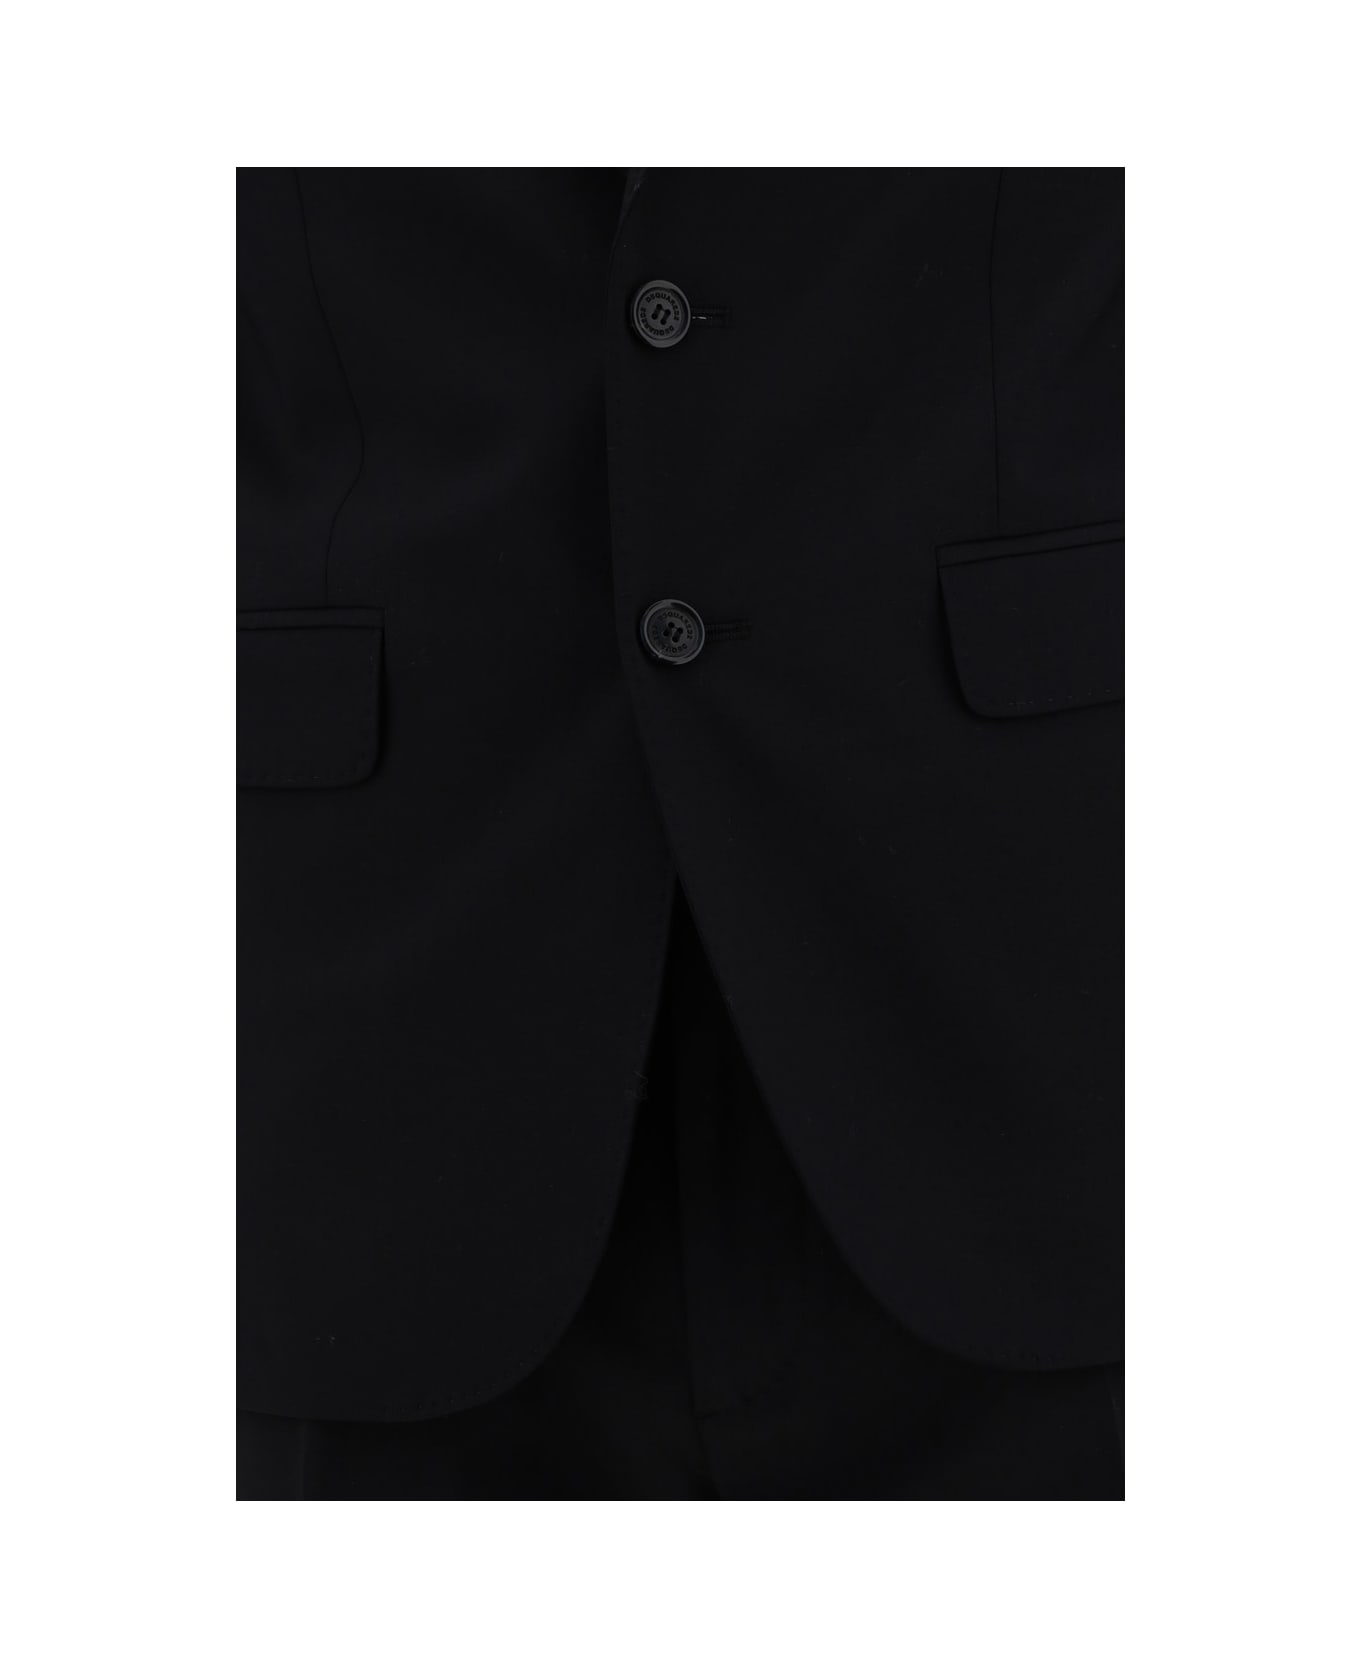 Dsquared2 Complete Suit - Black